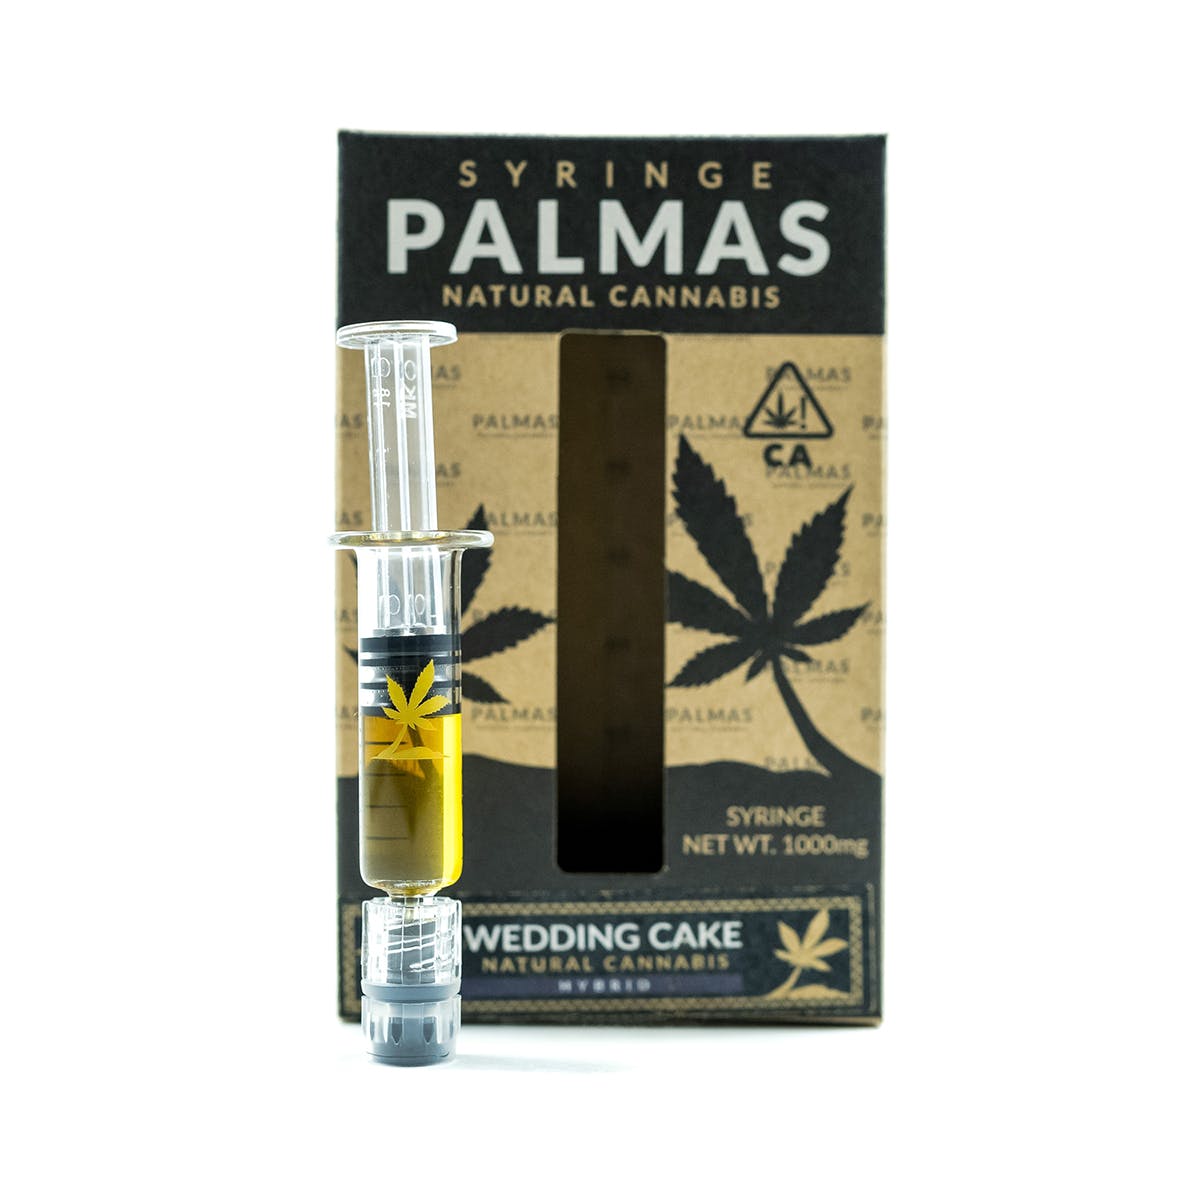 marijuana-dispensaries-pomonas-plug-20-cap-in-pomona-palmas-syringe-wedding-cake-1000mg